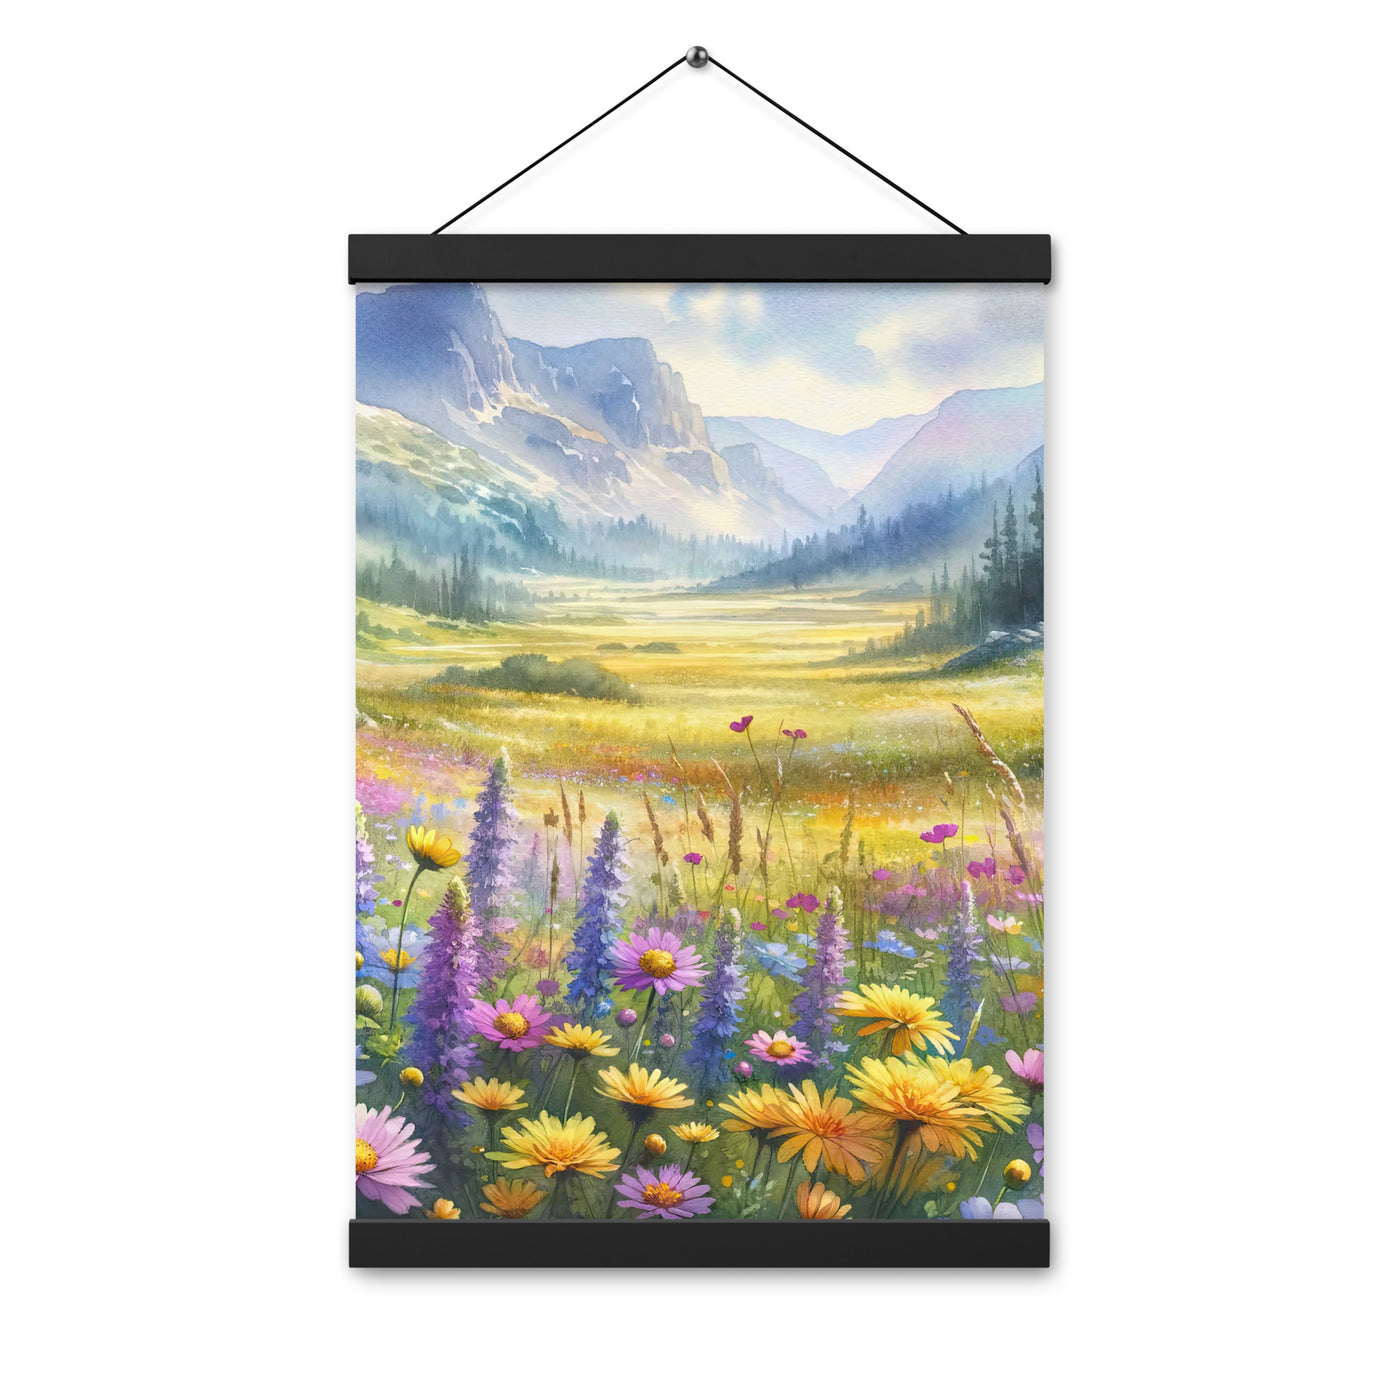 Aquarell einer Almwiese in Ruhe, Wildblumenteppich in Gelb, Lila, Rosa - Premium Poster mit Aufhängung berge xxx yyy zzz 30.5 x 45.7 cm